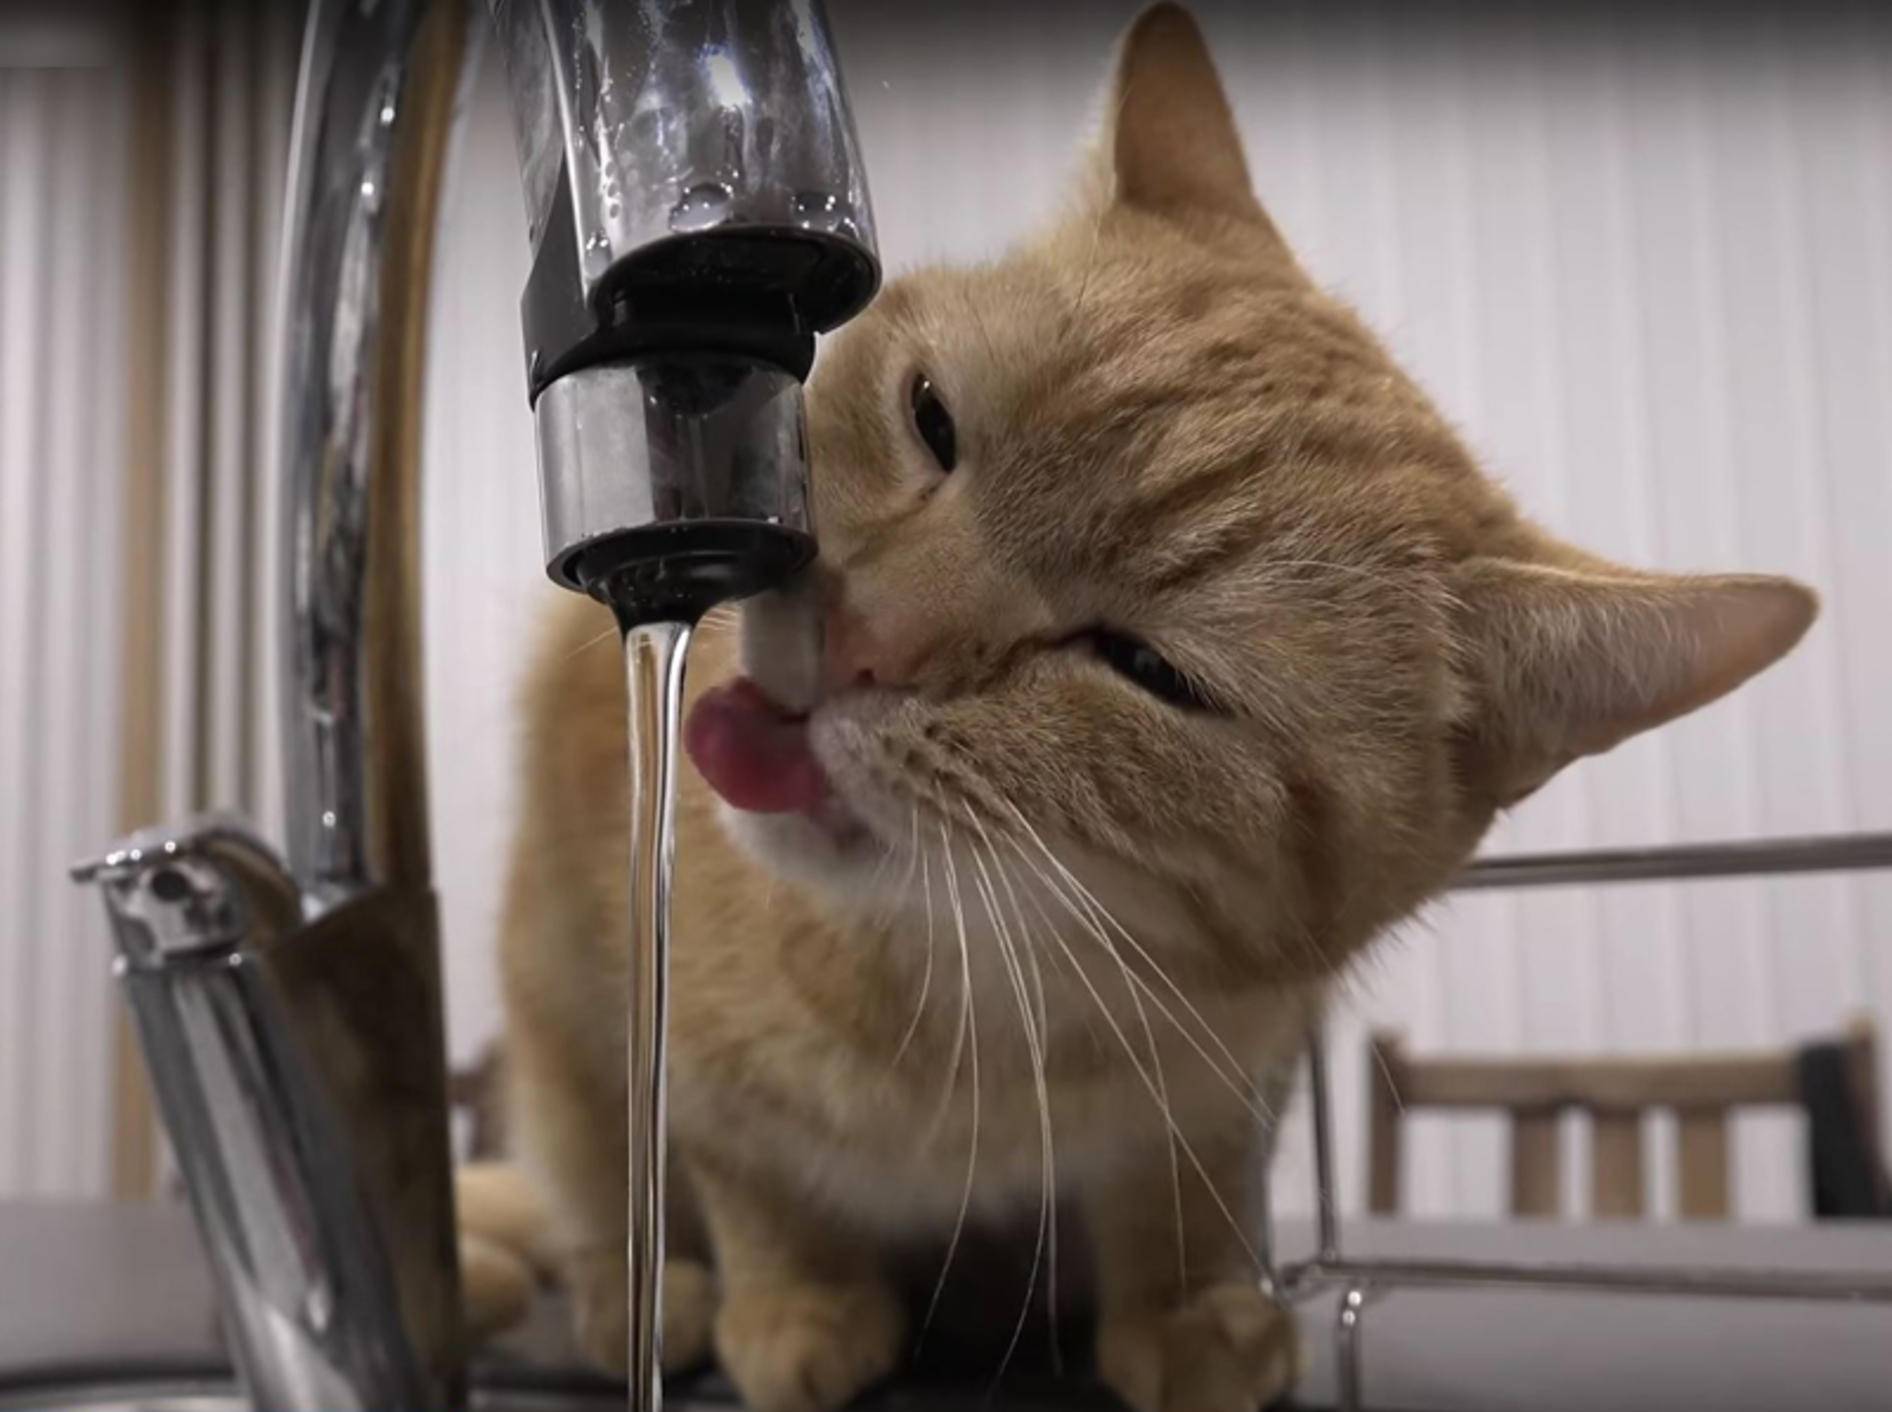 Bewohner von japanischer Katzen-WG stillen ihren Durst – YouTube / 10 Cats.+